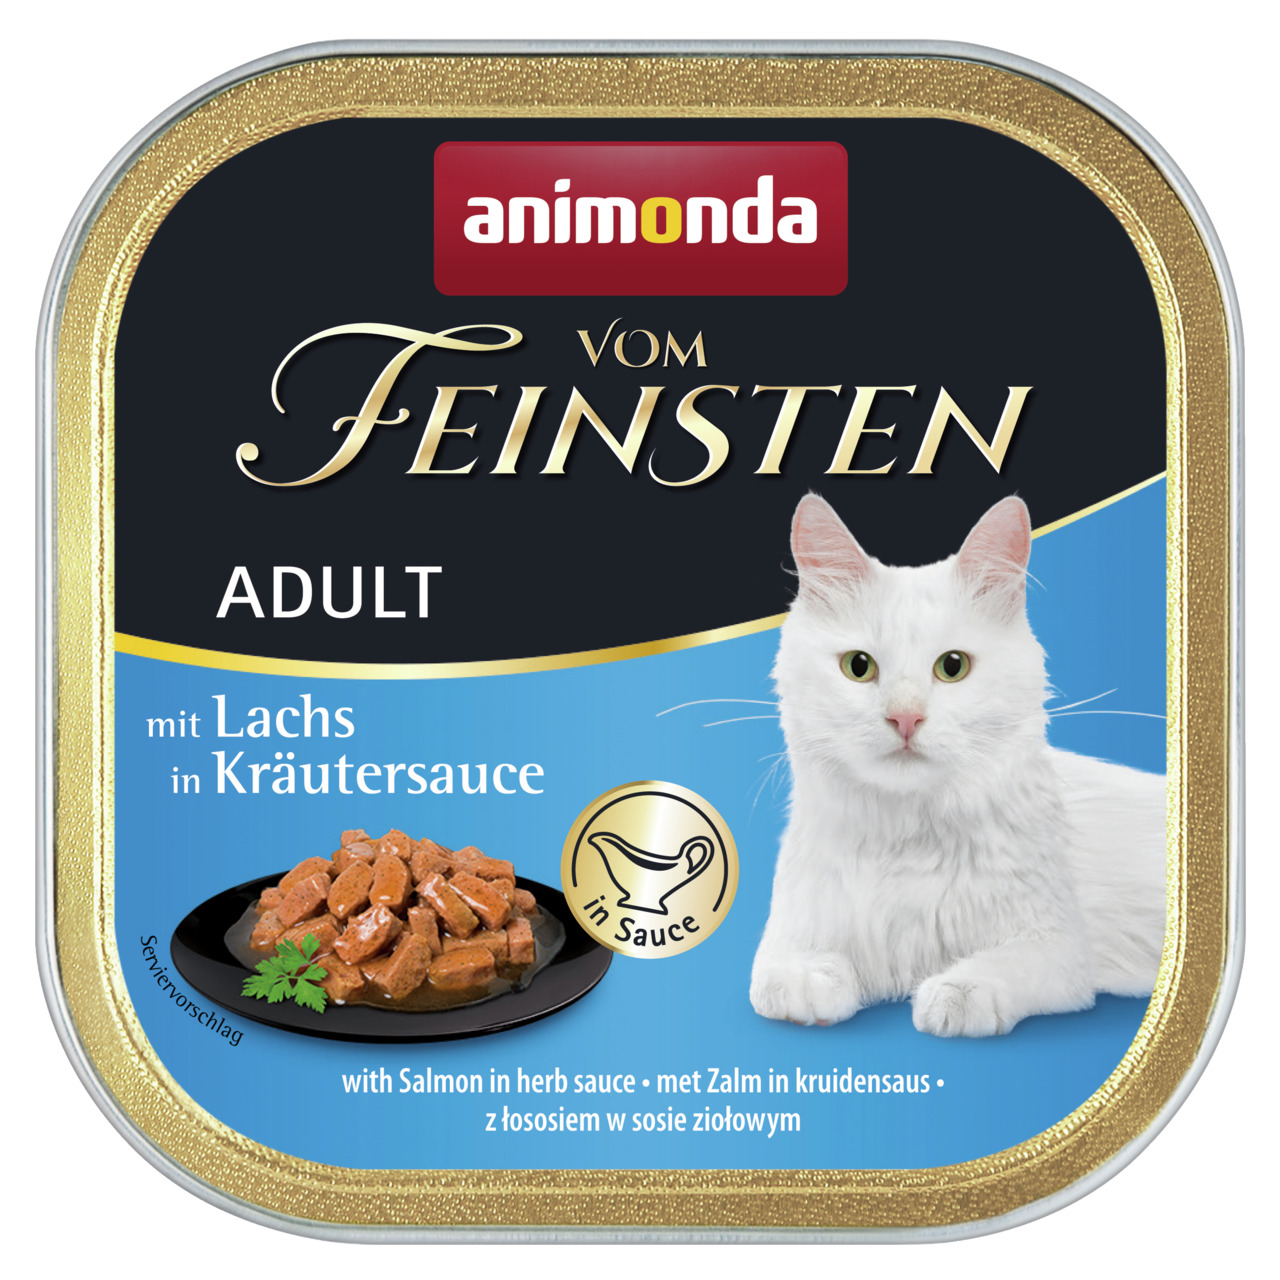 Animonda vom Feinsten Adult mit Lachs in Kräutersauce Katzen Nassfutter 100 g